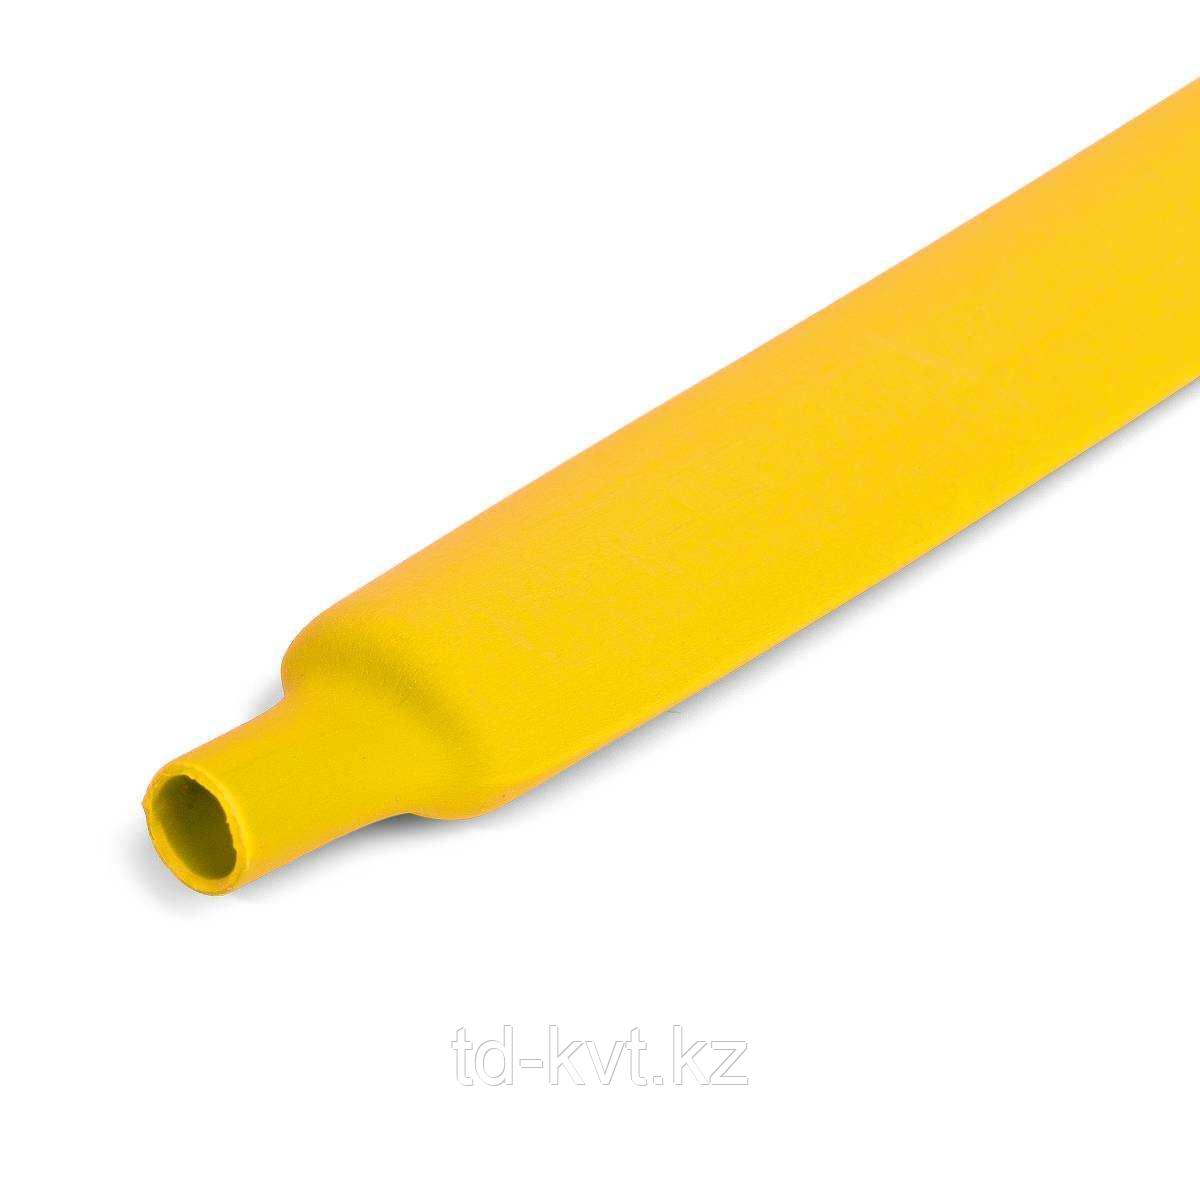 Цветная термоусадочная трубка с коэффициентом усадки 2:1 ТУТ (HF)-10/5, желт